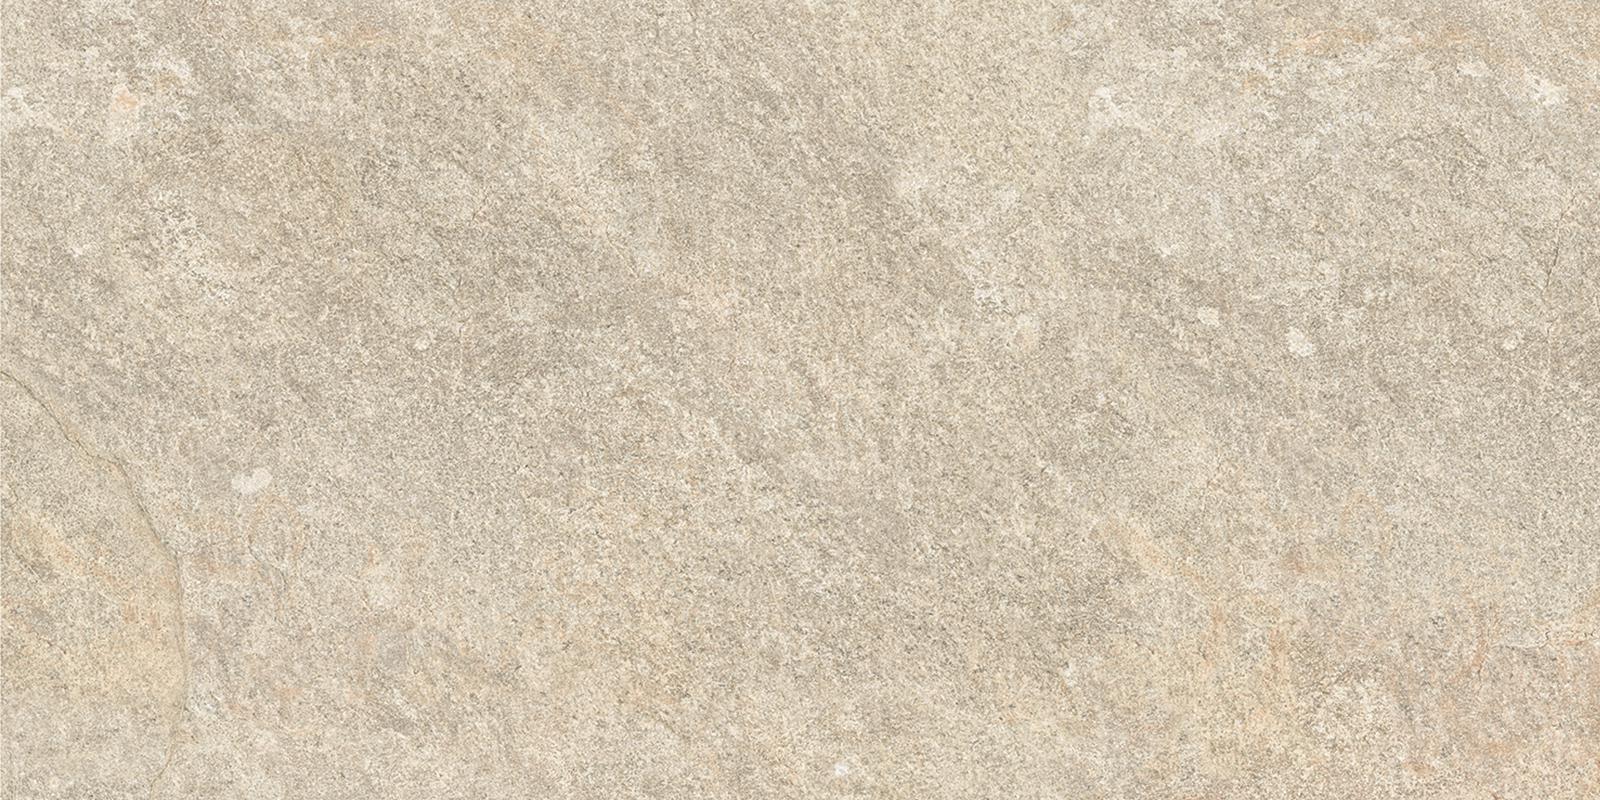 Ergon Oros Stone Sand 60x120